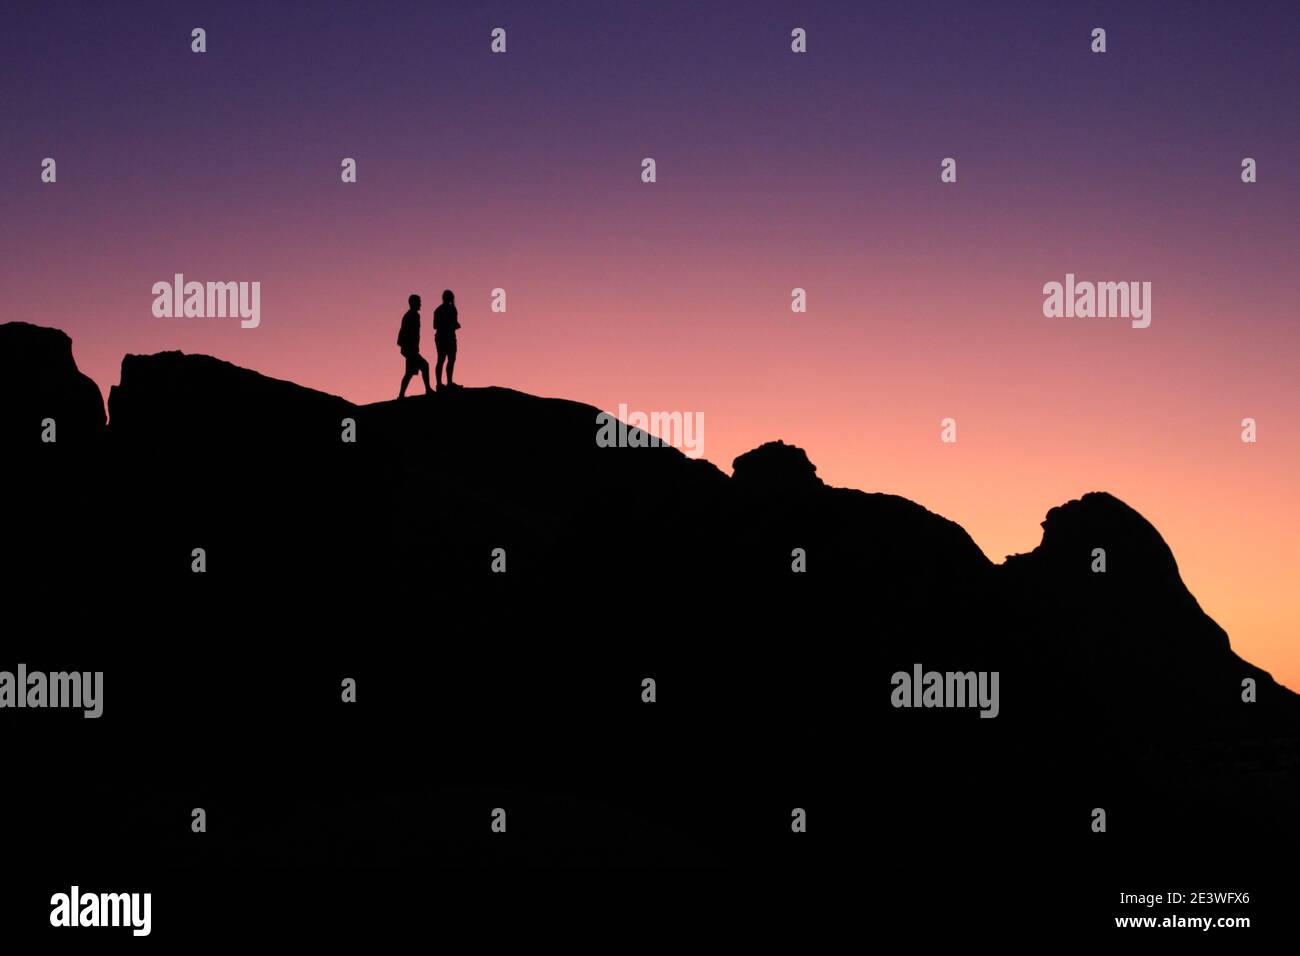 Silhouettes de gens devant un coucher de soleil violet Banque D'Images